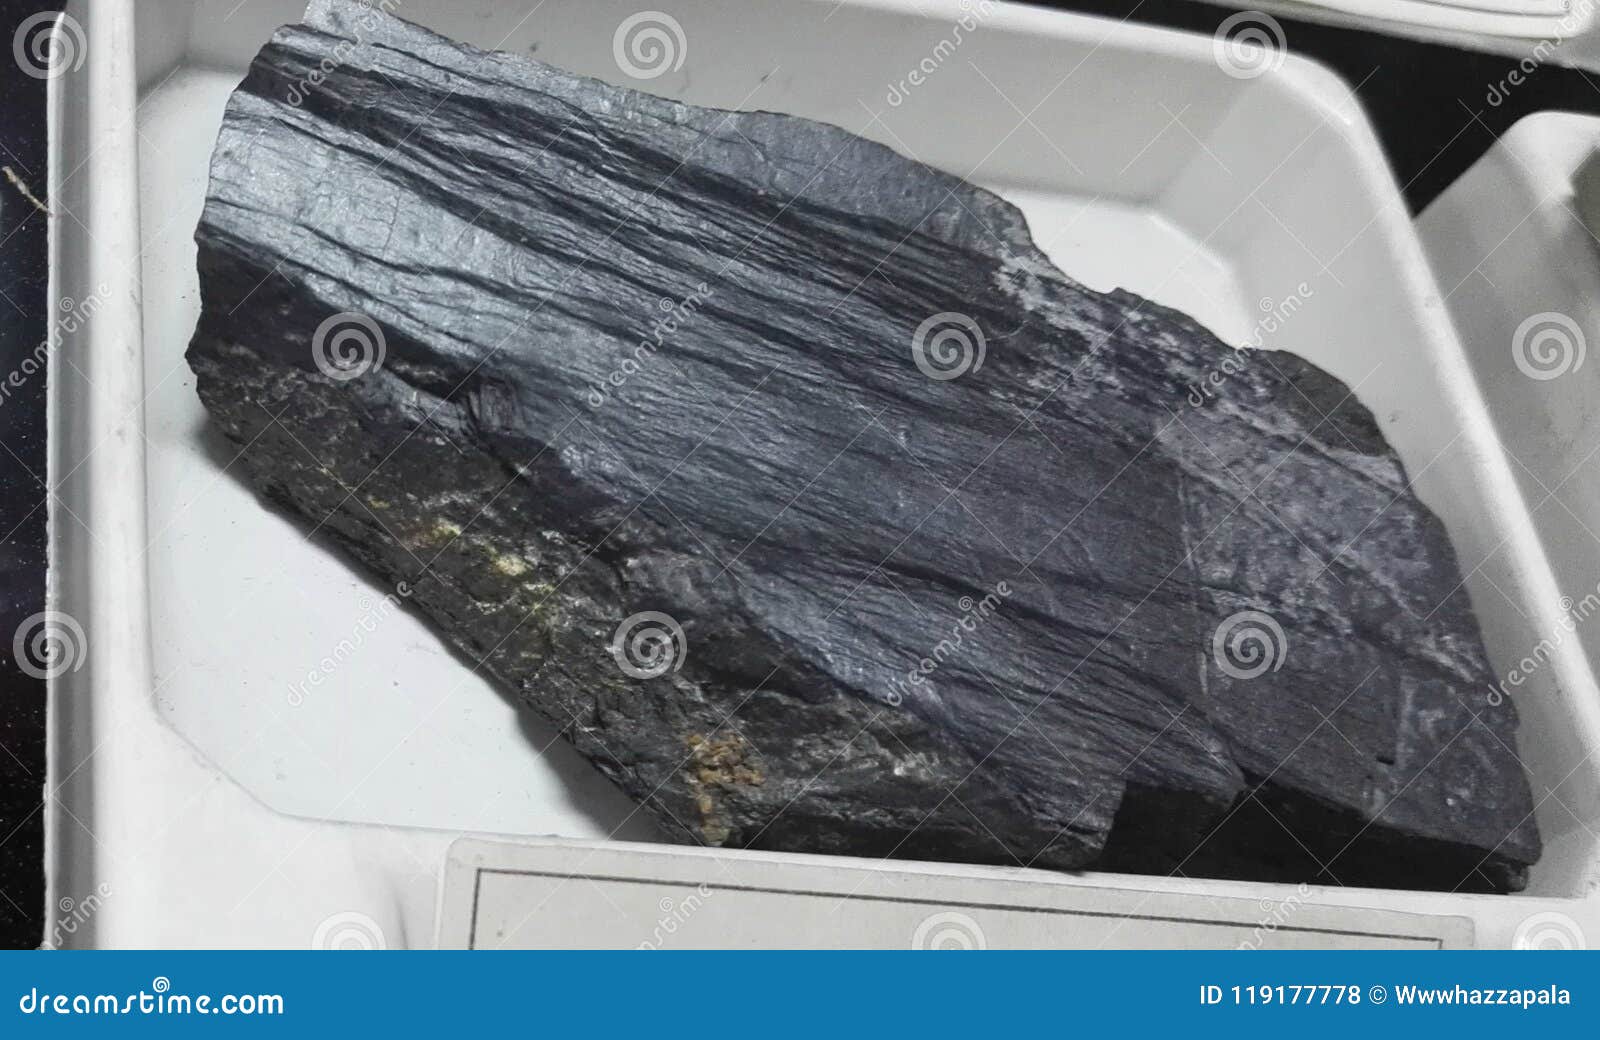 Ardoise - Identification des roches